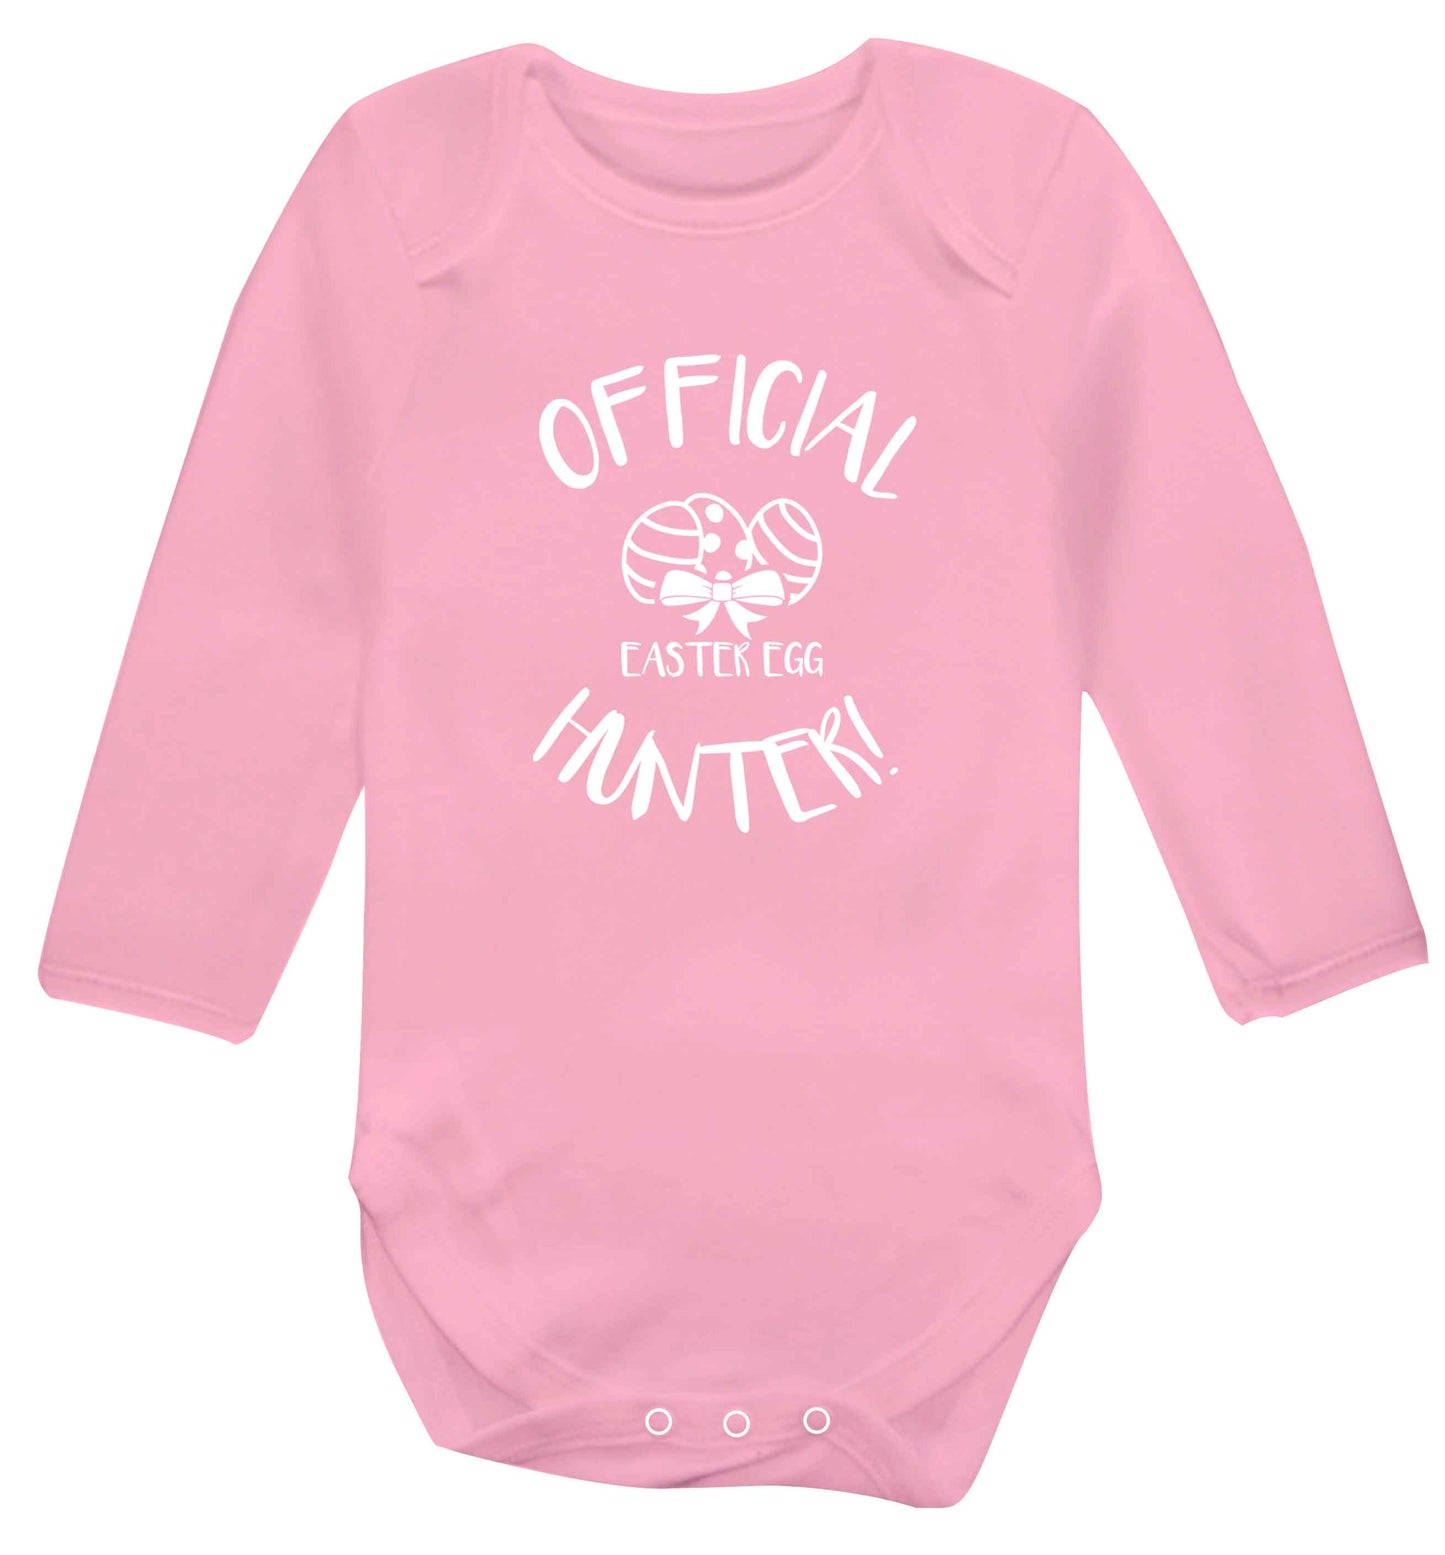 Official Easter egg hunter! baby vest long sleeved pale pink 6-12 months